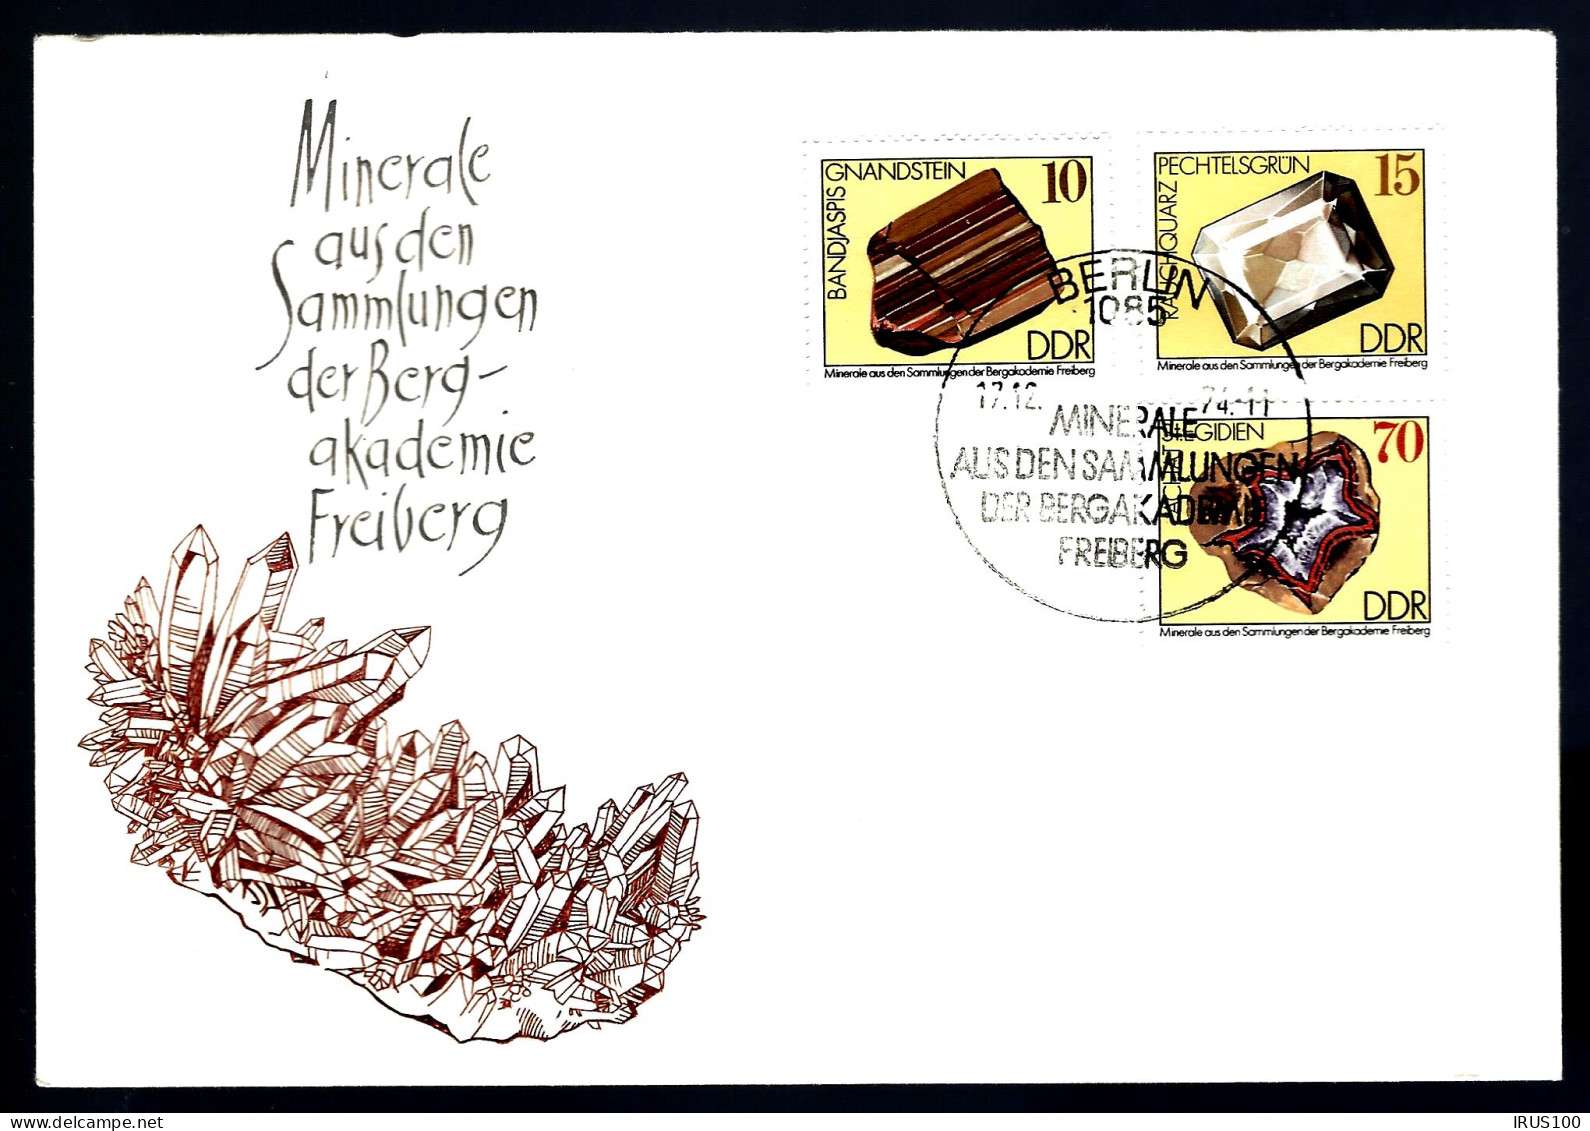 MINÉRAUX - COLLECTION DE LA BERG-AKADEMIE - FRIBOURG - 2 ENVELOPPES - Minerals